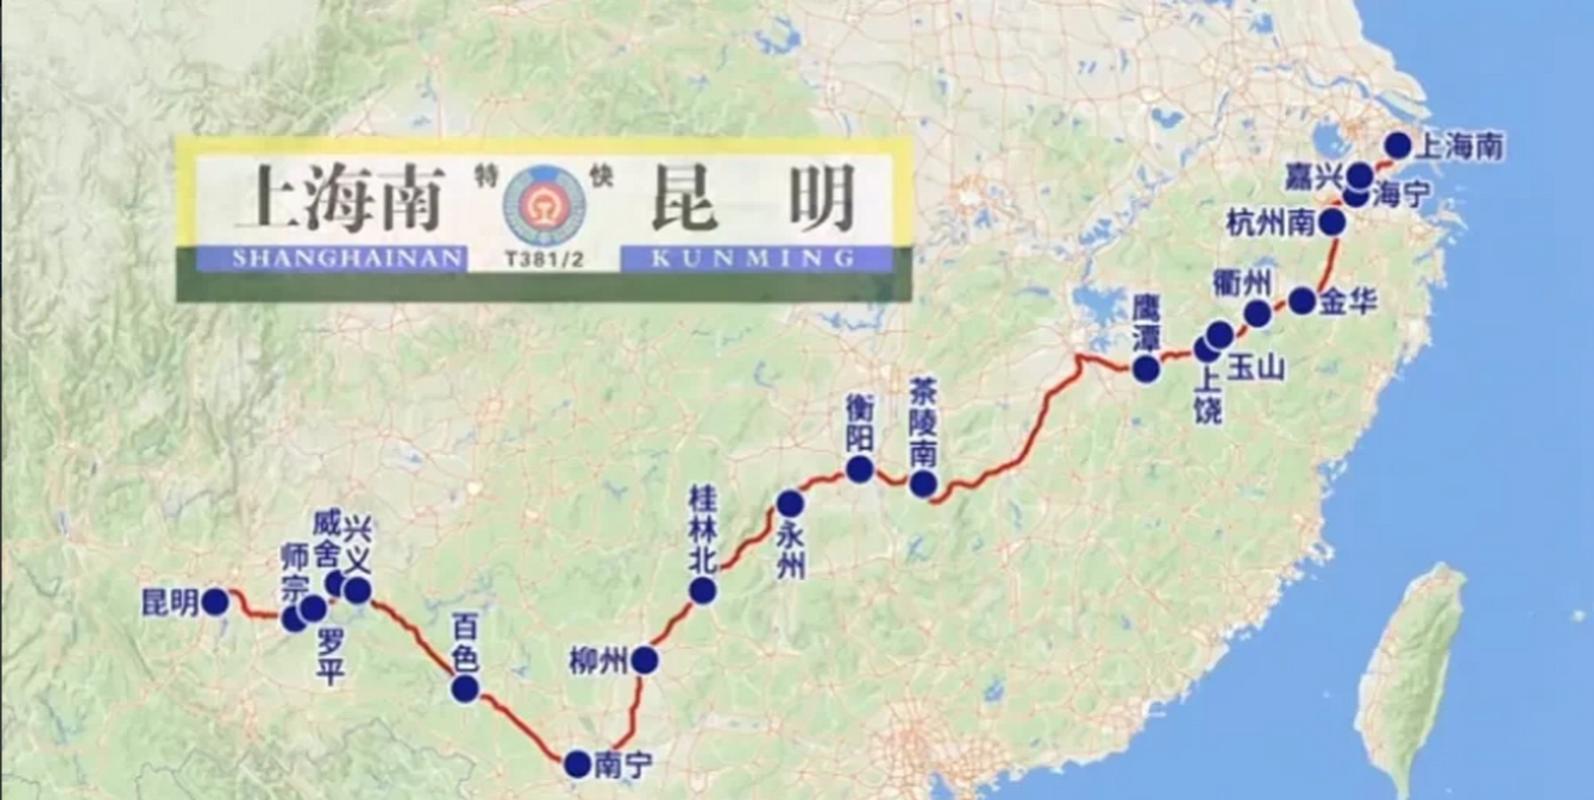 上海到昆明的列车t381到昆明哪个火车站的